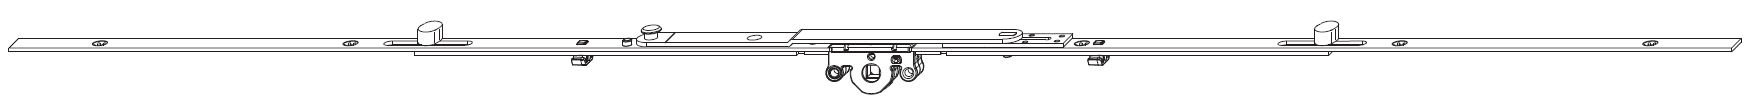 MAICO -  Cremonese MULTI-MATIC per vasistas altezza maniglia variabile con forbice per ribalta premontata - gr / dim. 1700 - entrata 15 - alt. man. CENTRALE - lbb/hbb 1301 - 1700